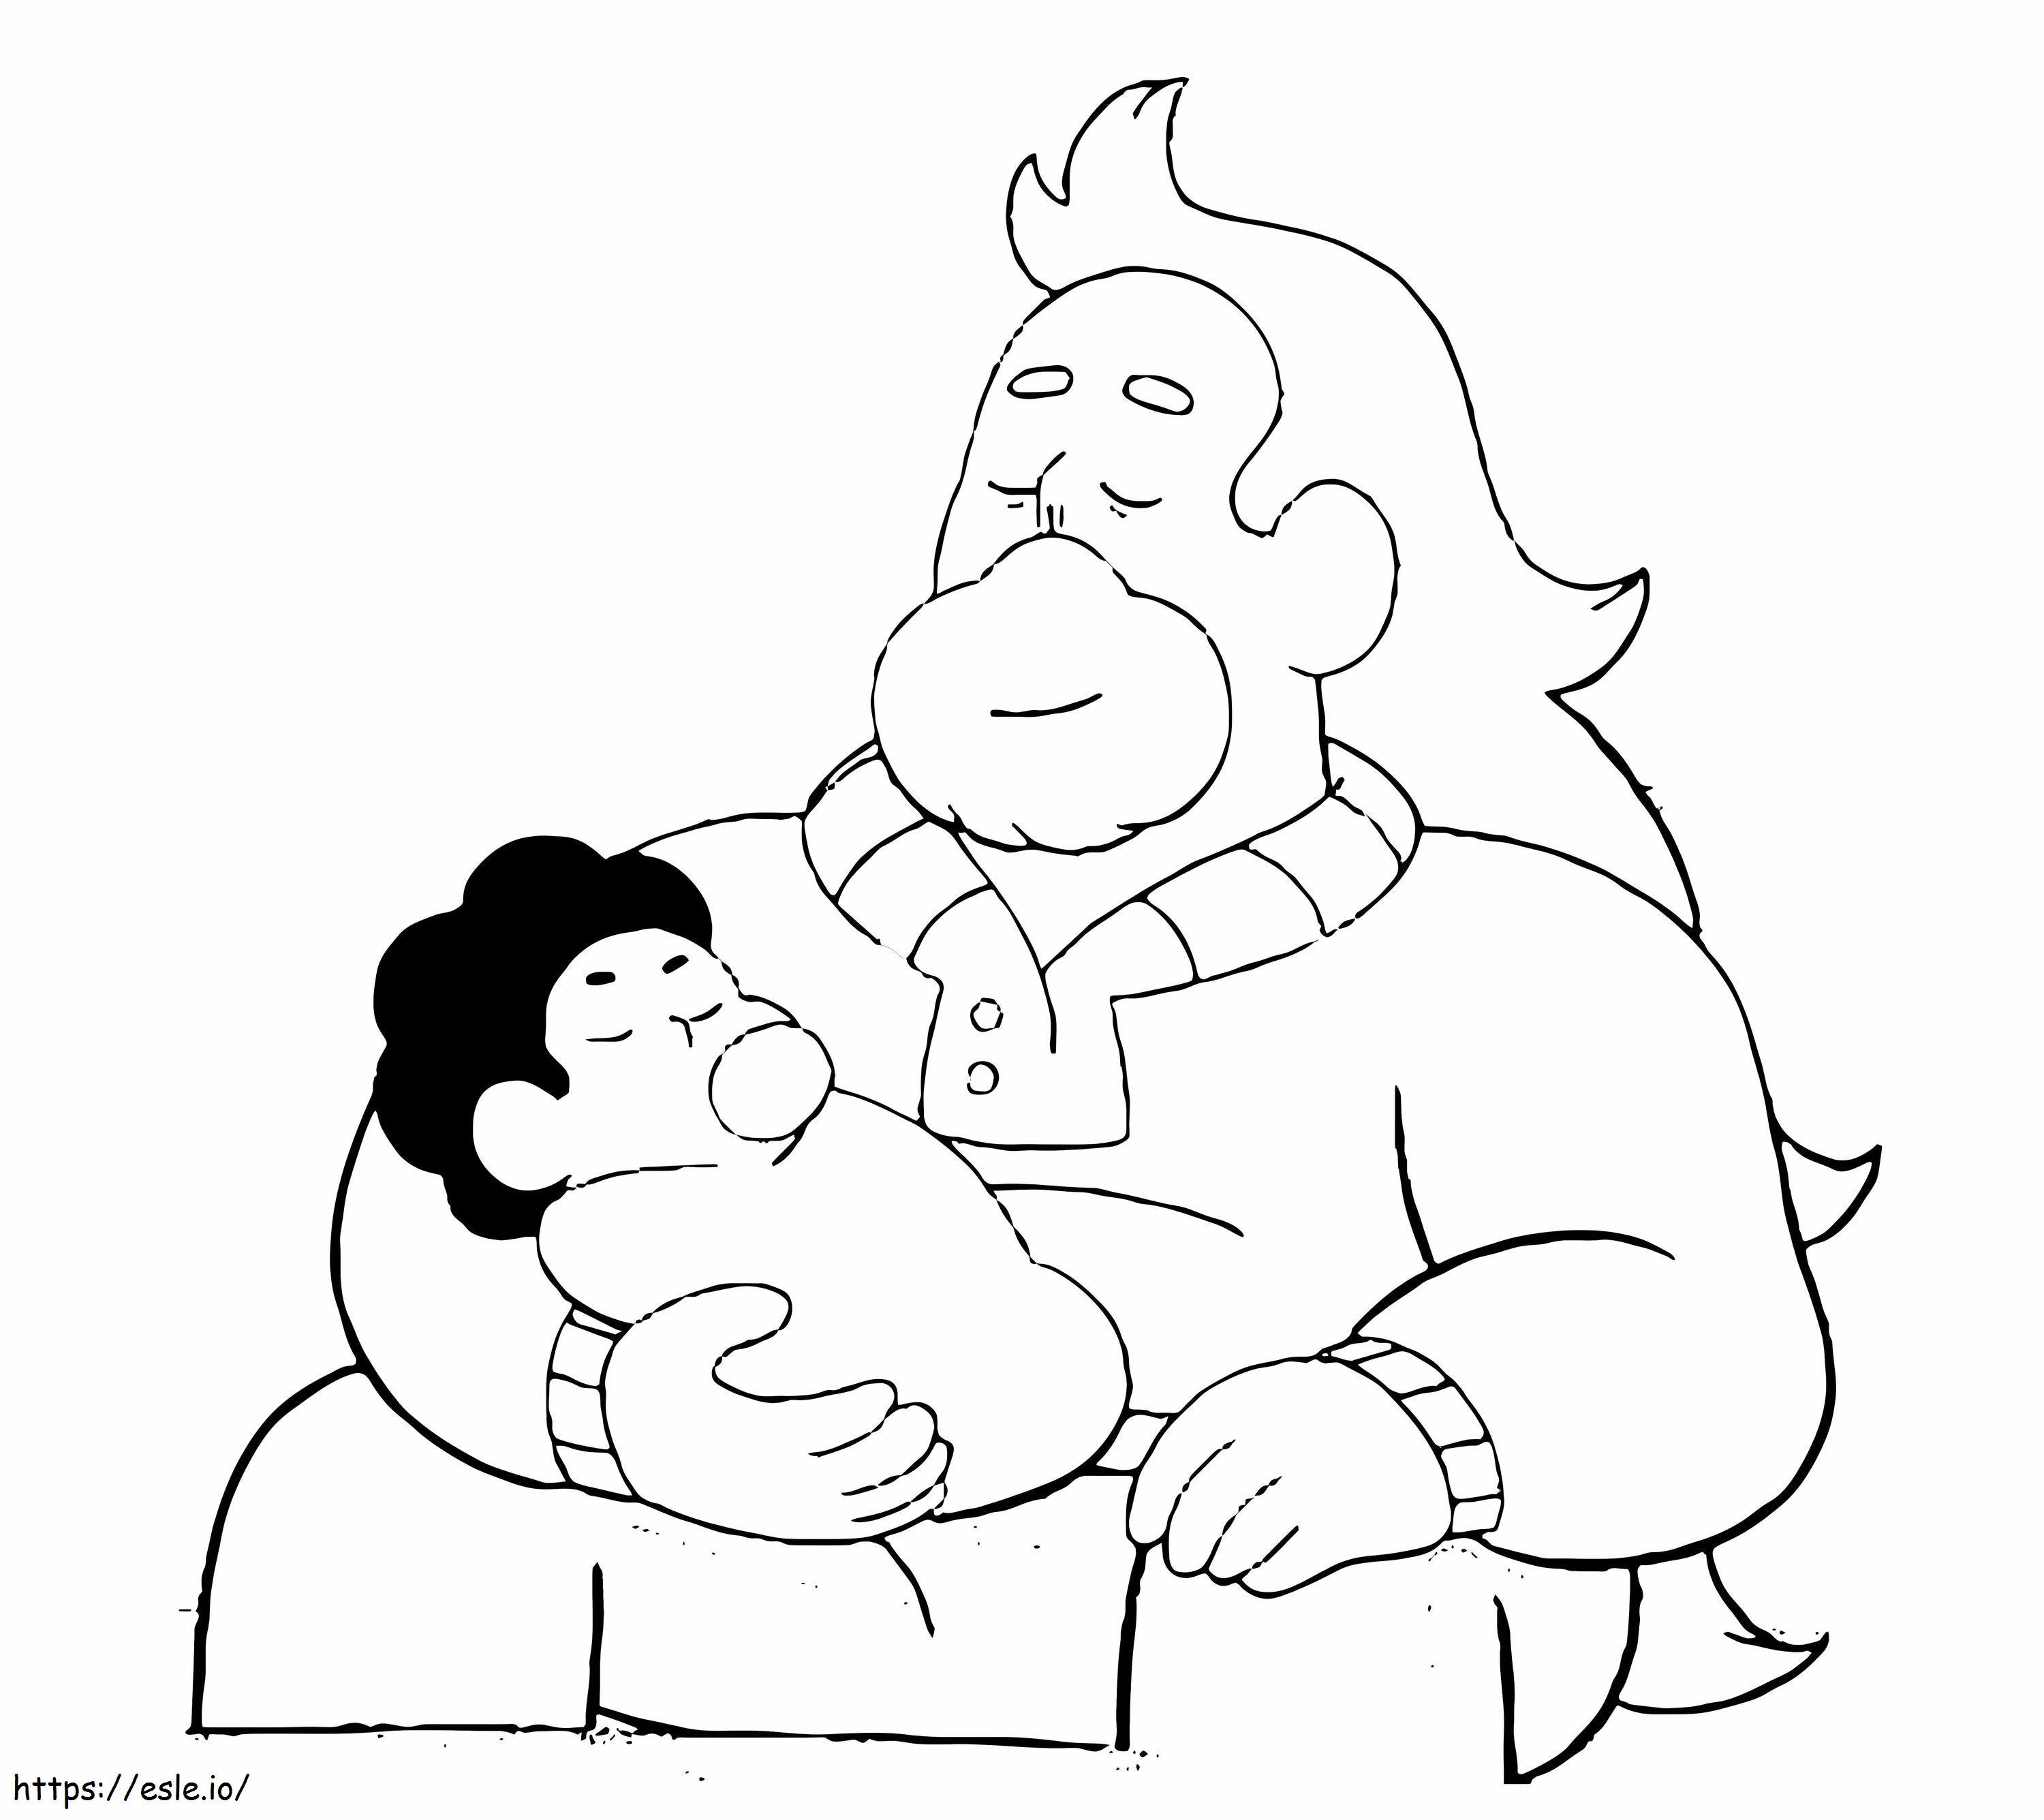 Greg trzymający małego Stevena kolorowanka